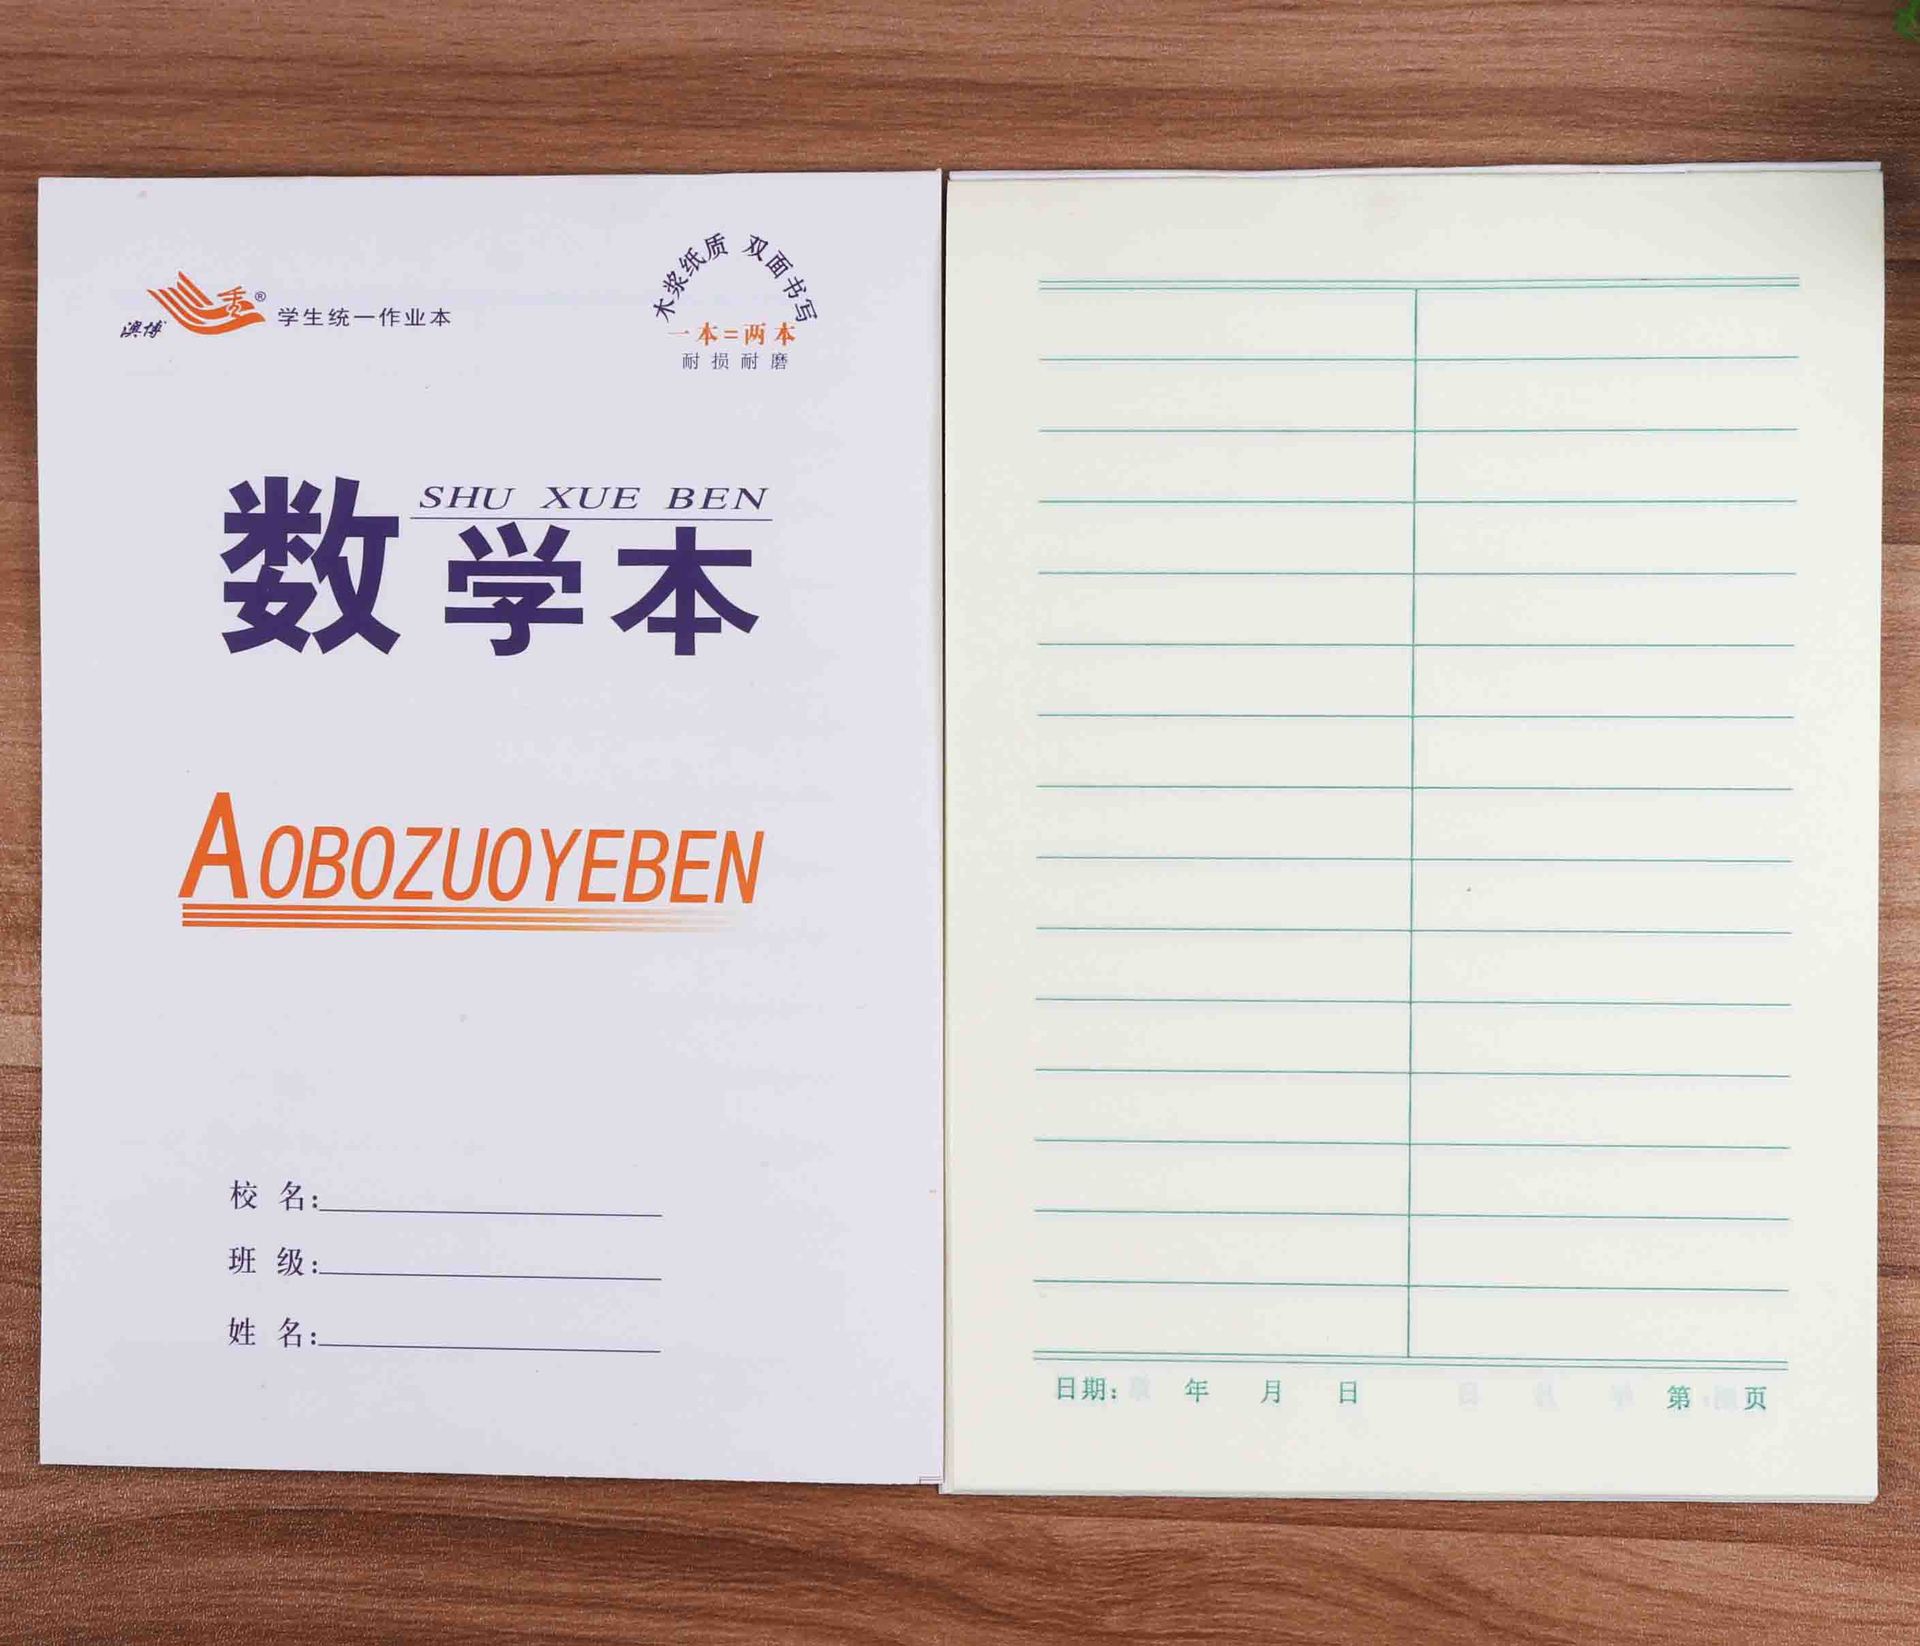 江苏省小学生统一薄本 3~6年纪 作文、语文、数学、英语 作业本-阿里巴巴